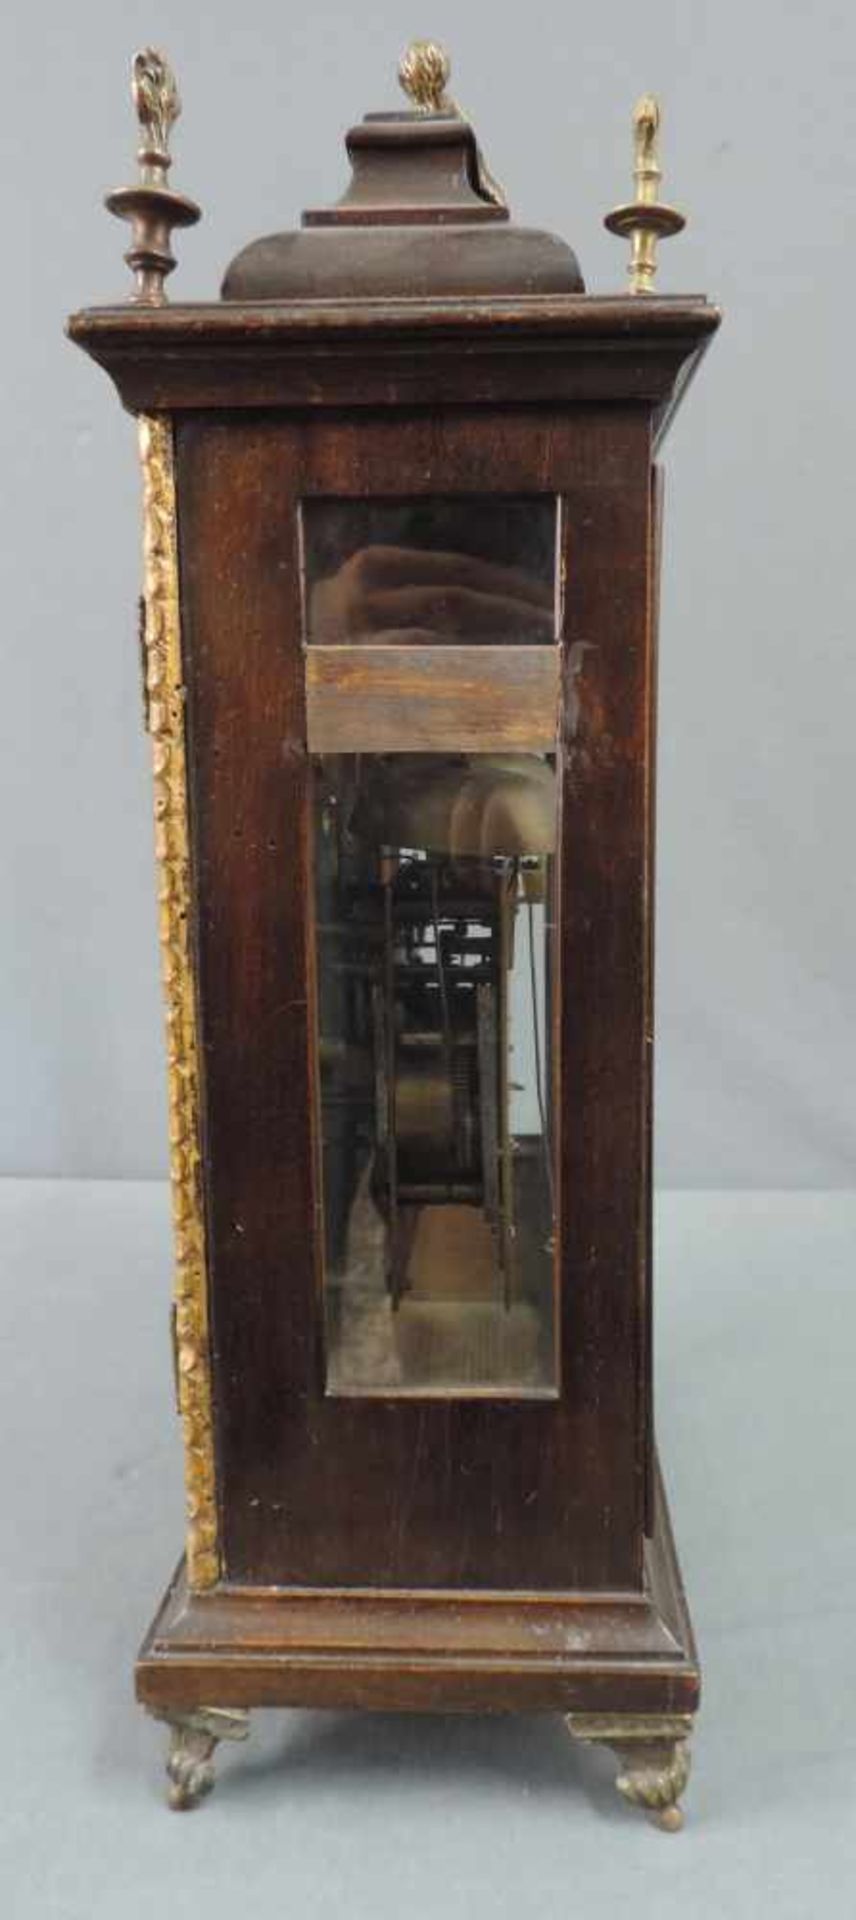 Kaminuhr. Wohl 19. Jahrhundert. 47 cm x 28 cm. Kaminuhr mit Holzgehäuse zum aufziehen. - Bild 2 aus 6